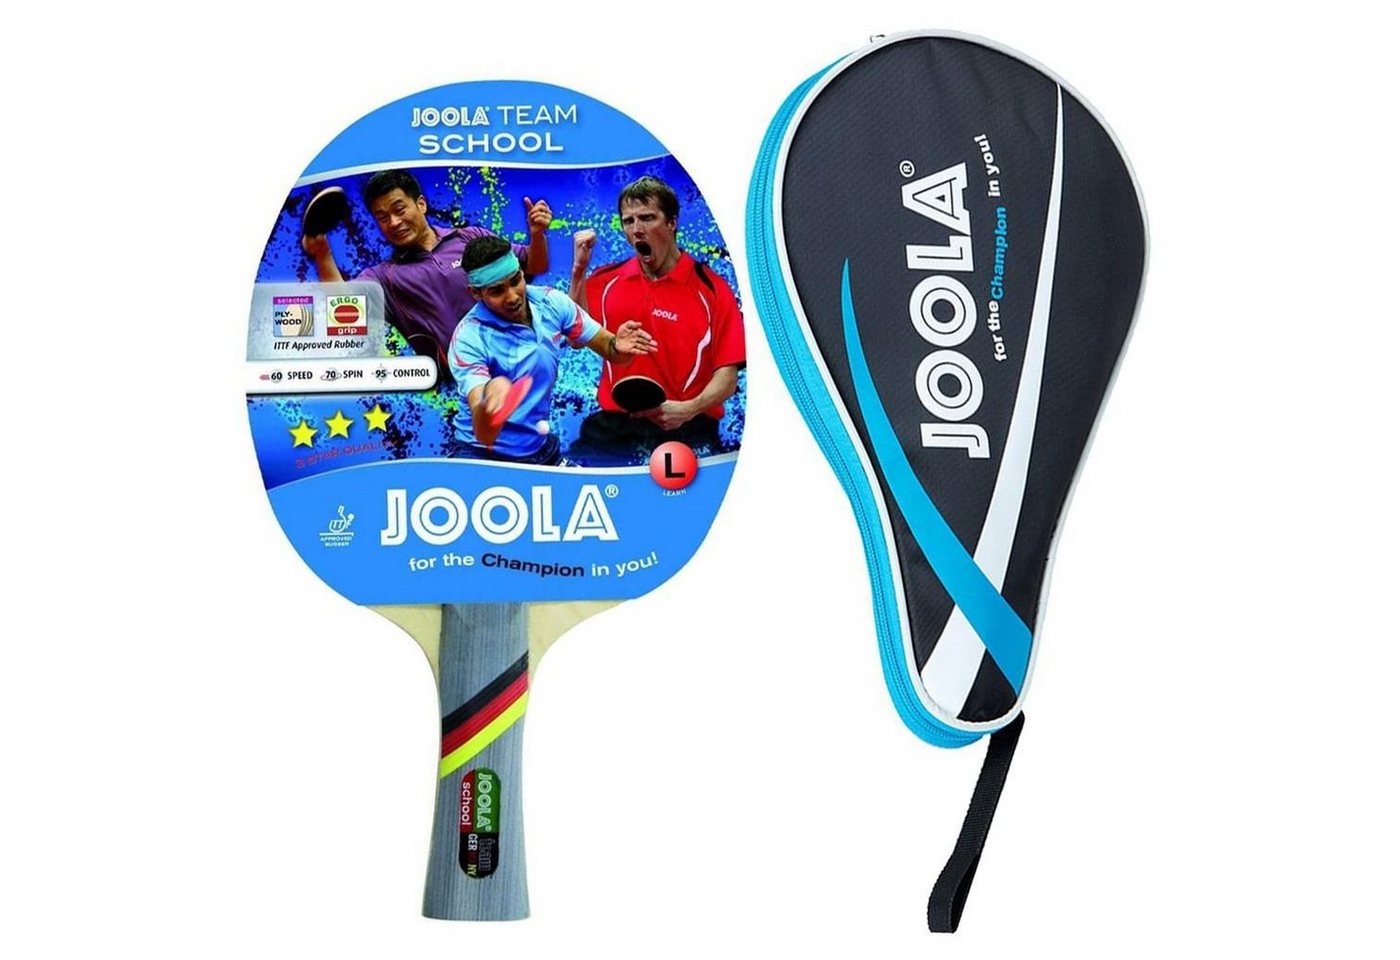 Joola Tischtennisschläger Team School + Pocket blau, Tischtennis Schläger Set Tischtennisset Table Tennis Bat Racket von Joola